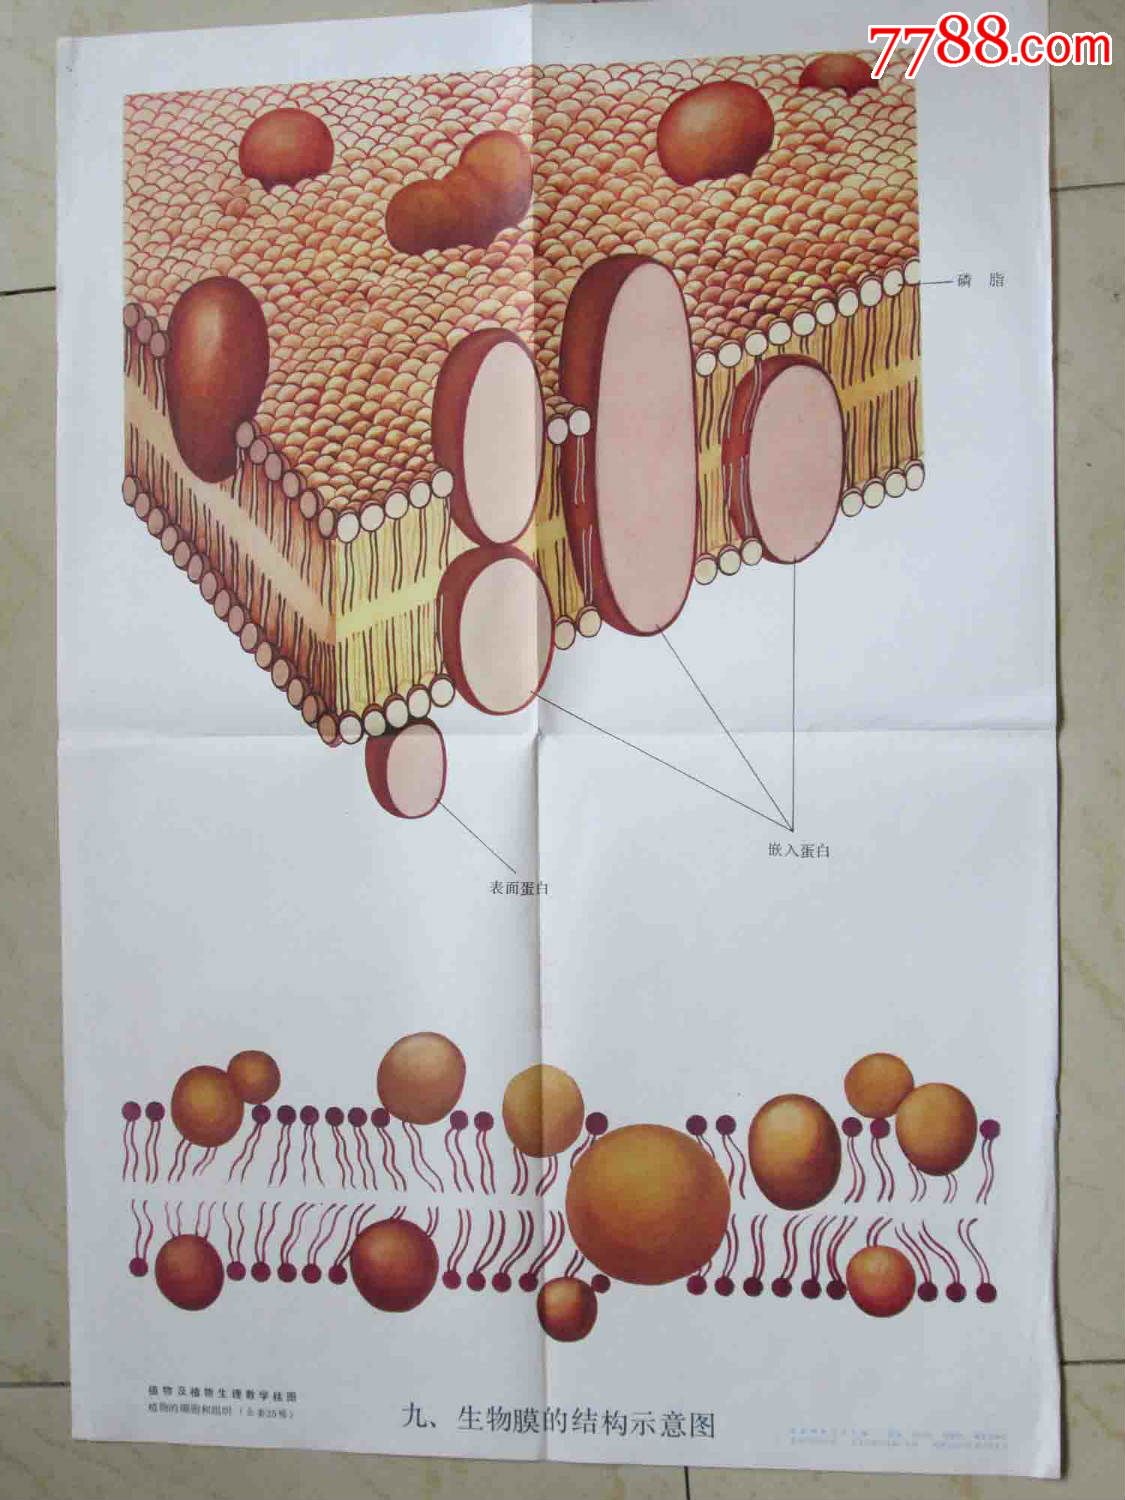 生物膜的结构示意图